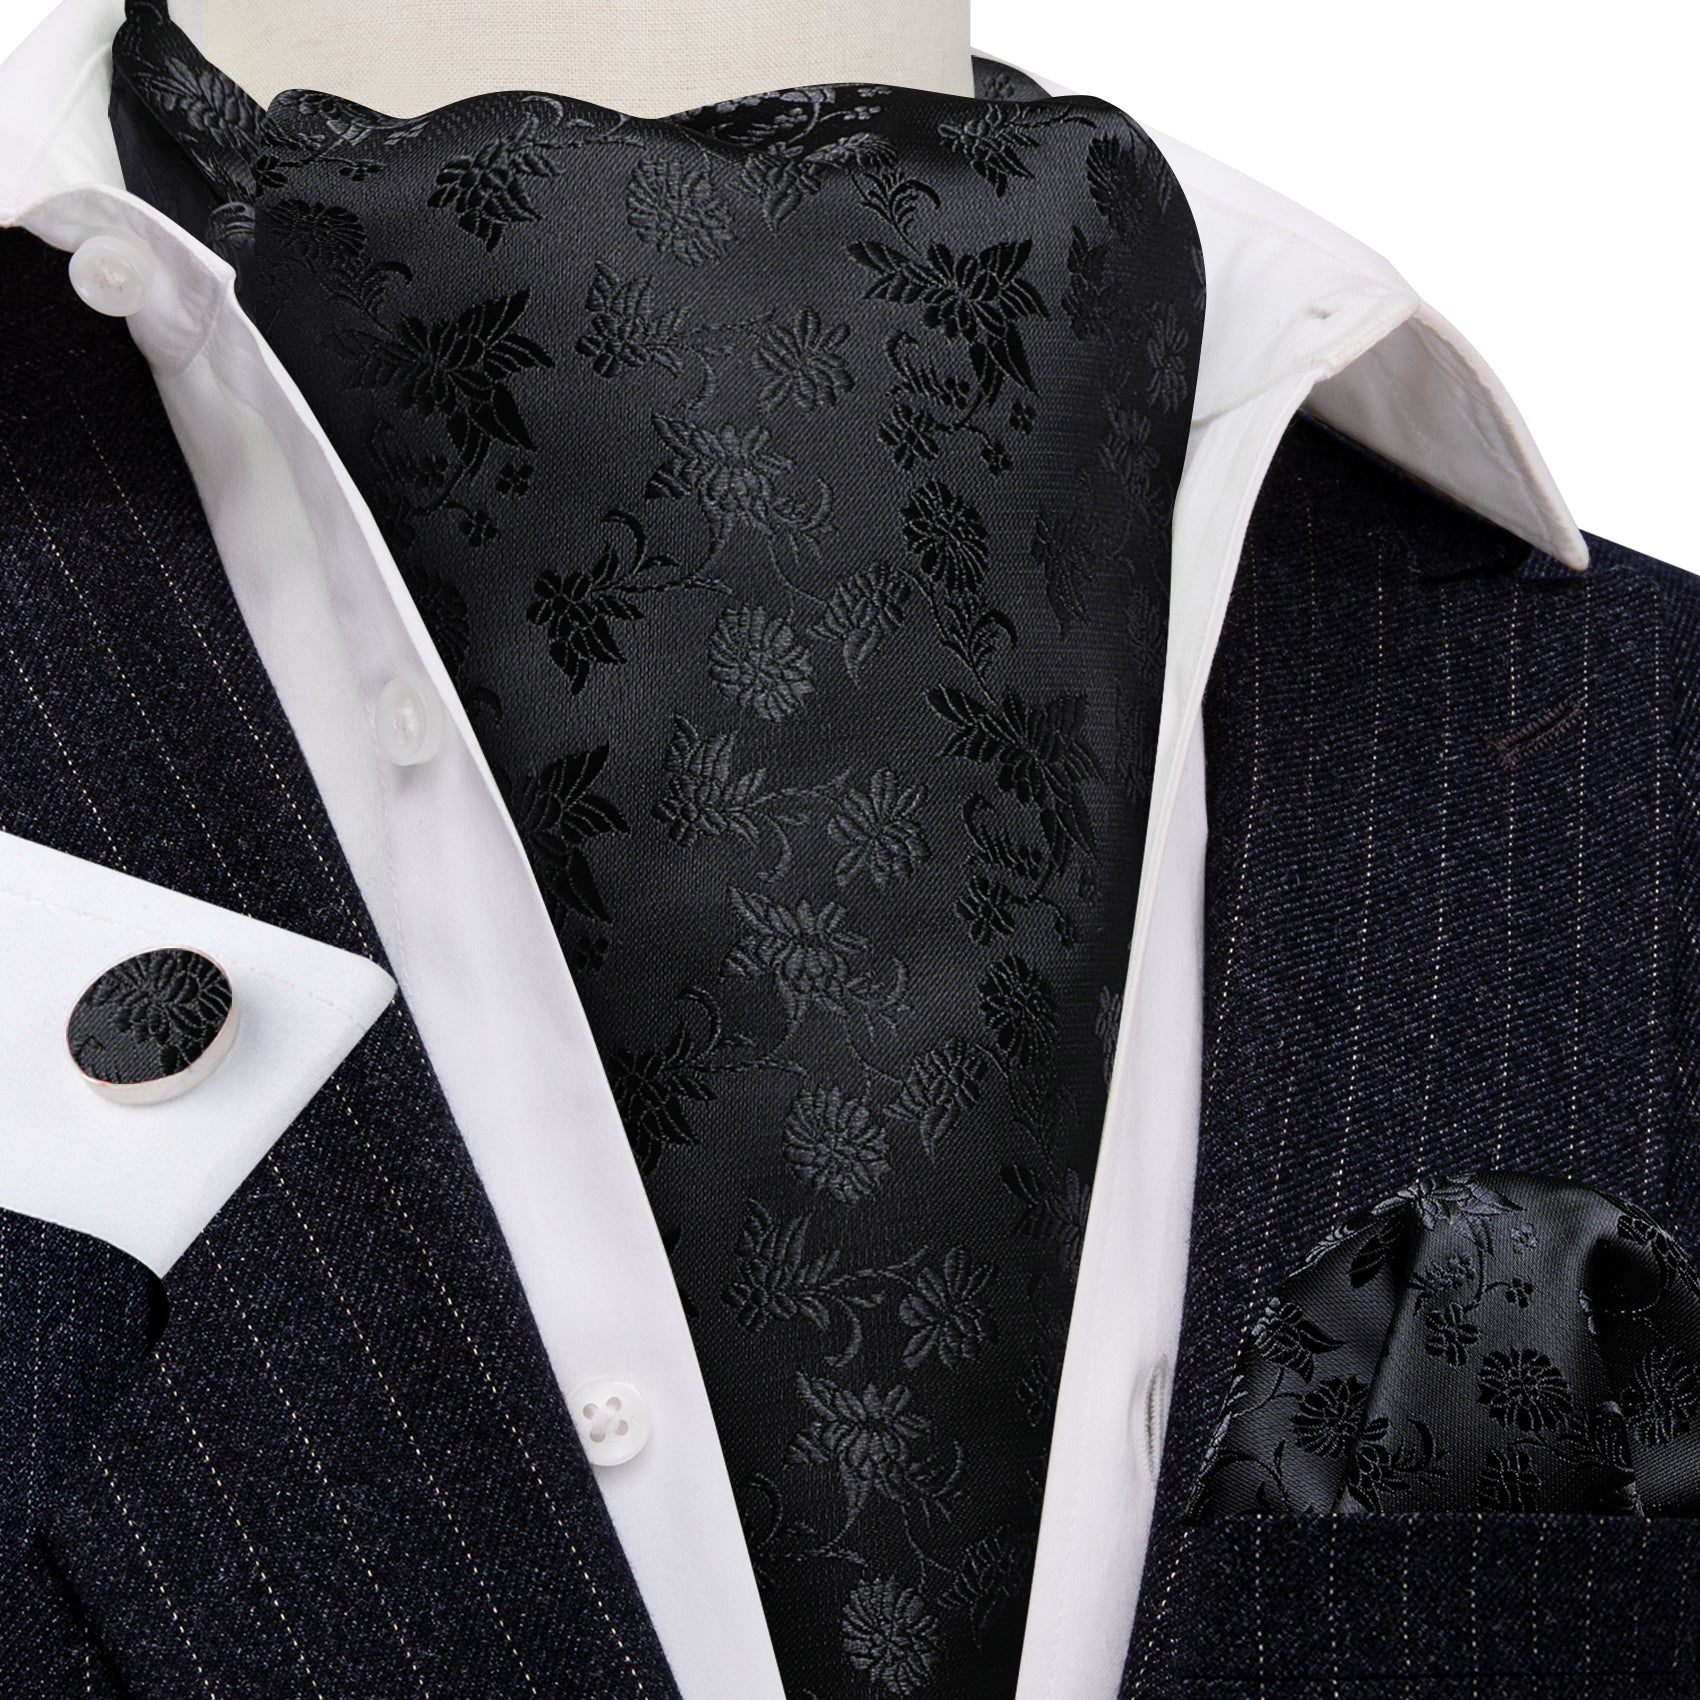 Black Flower Ascot Handkerchief Cufflinks Set